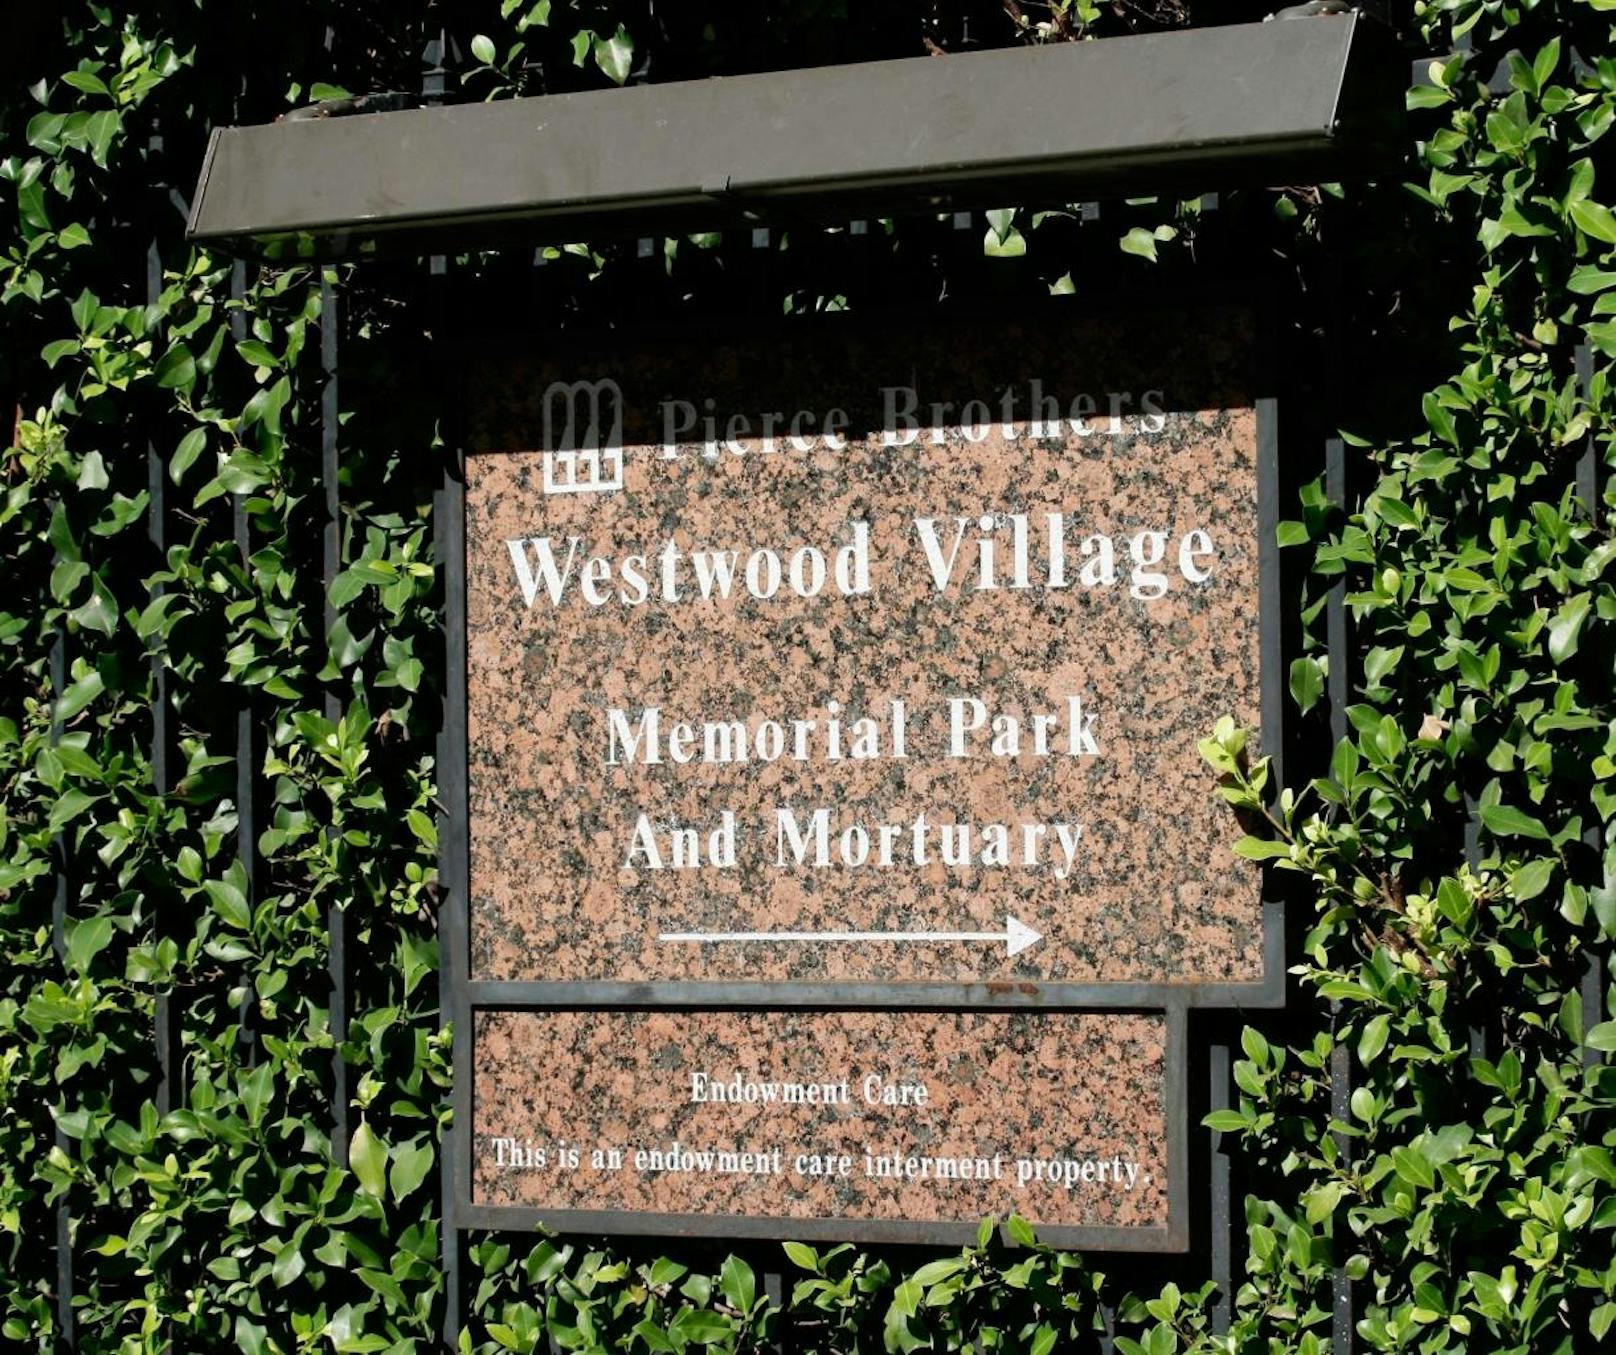 Pierce Bros Westwood Village Memorial Park 